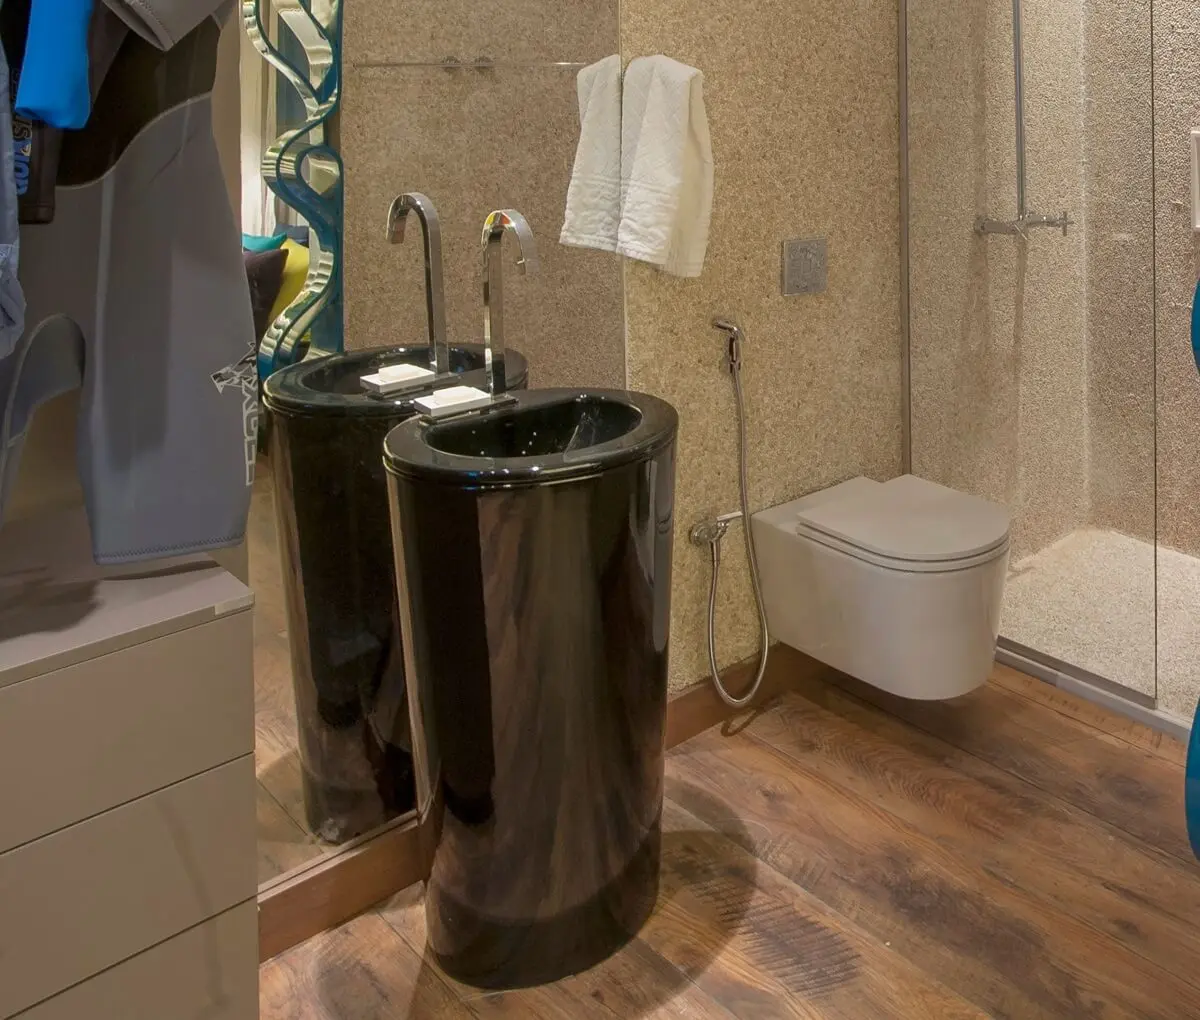 banheiro moderno decorado com vaso sanitário Deca